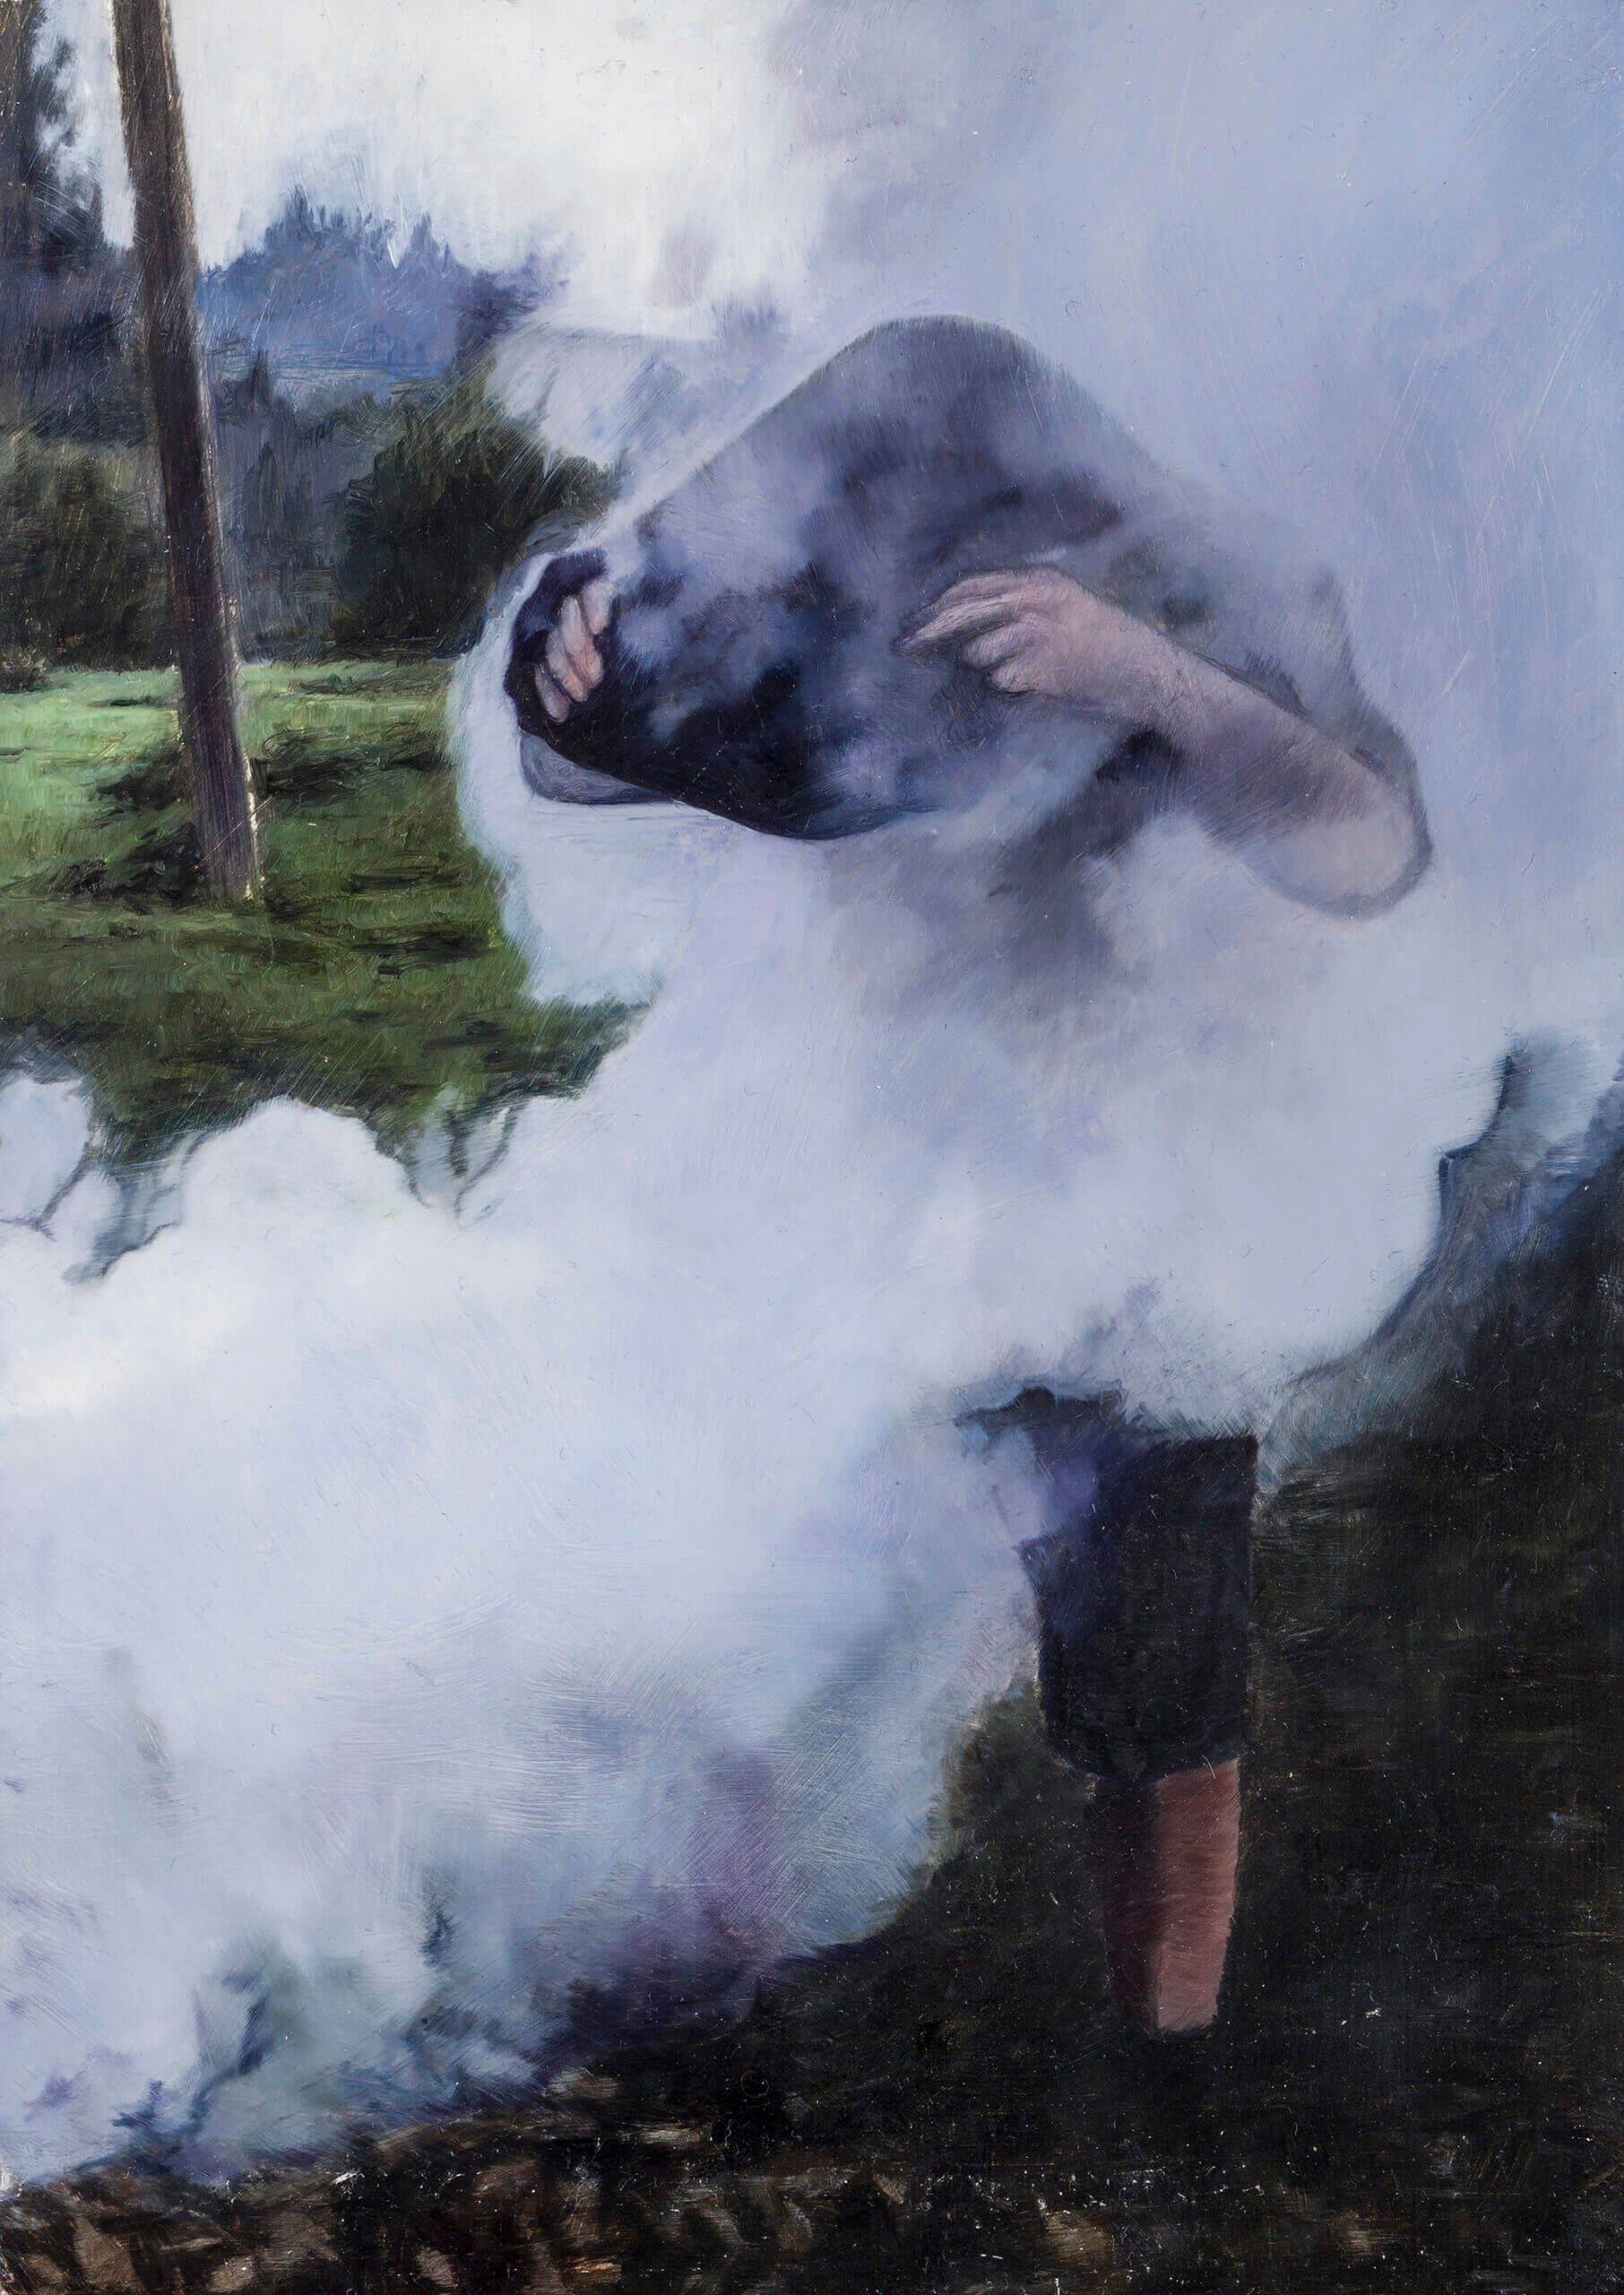 Self Portrait in smoke, oil on aluminium sheet, 23.5x16cm 2021